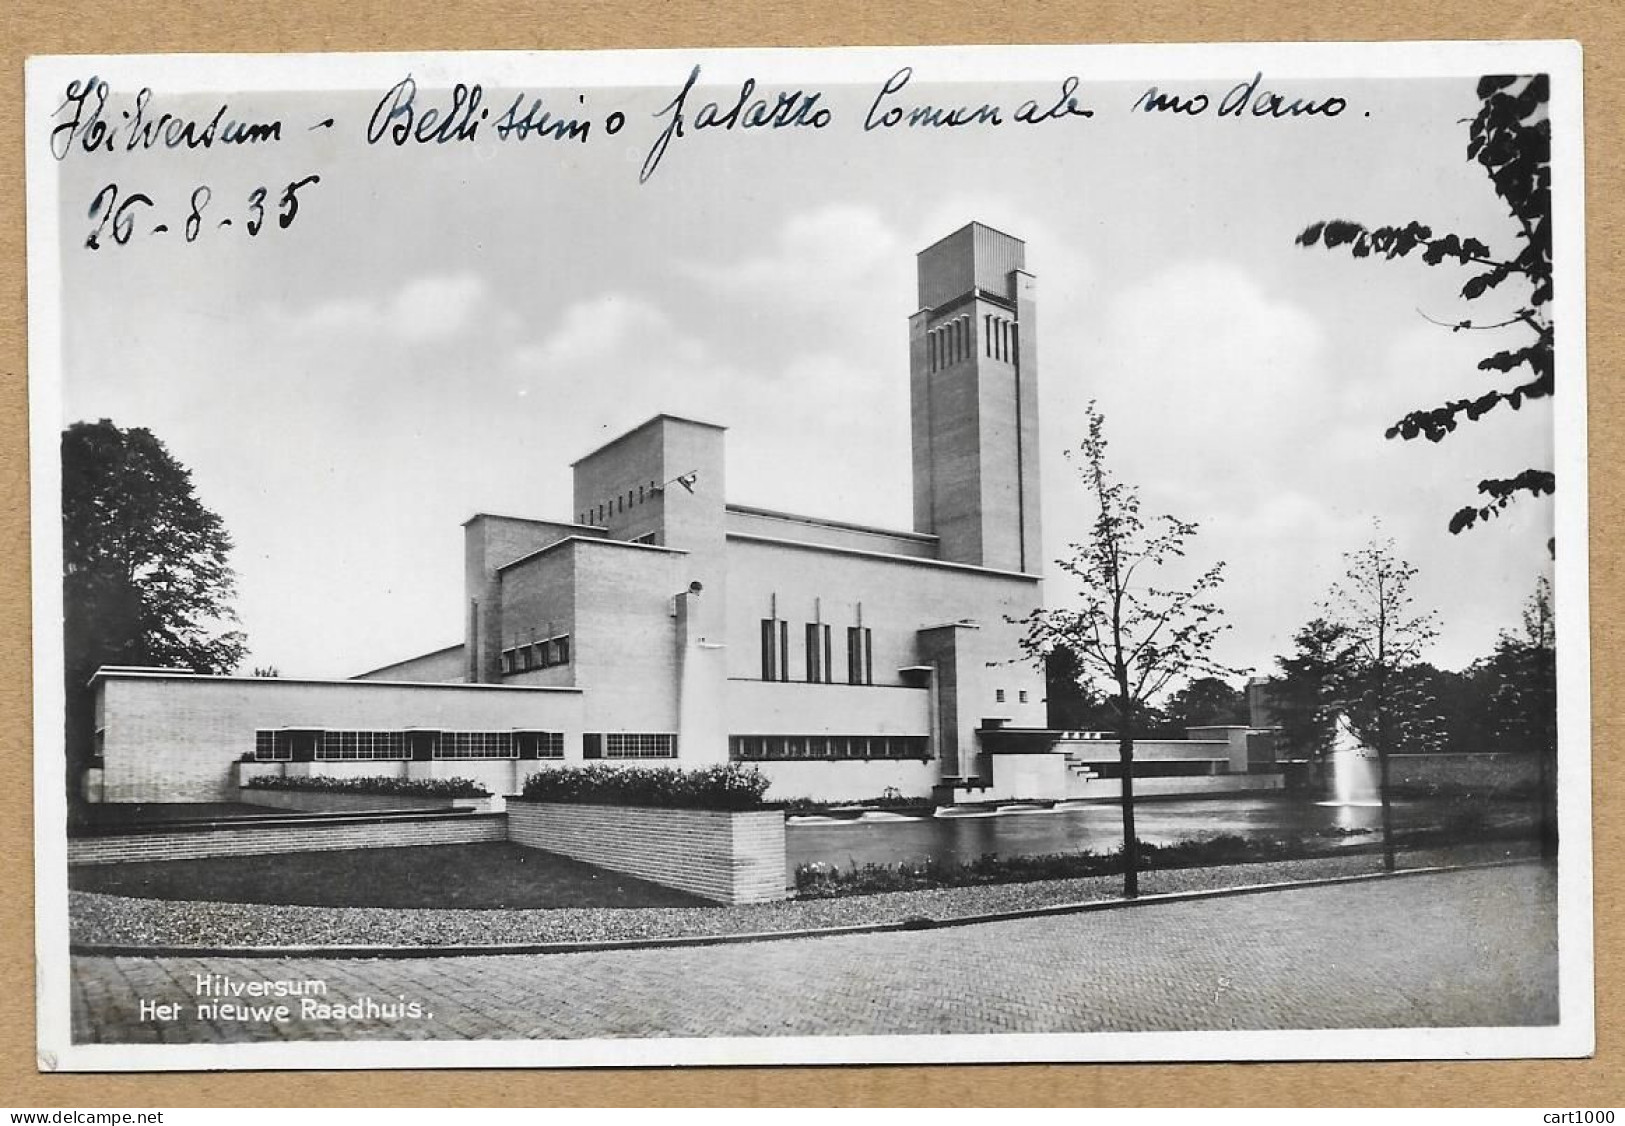 HILVERSUM HETNIEUWE RAADHUIS 1935 N°H316 - Hilversum